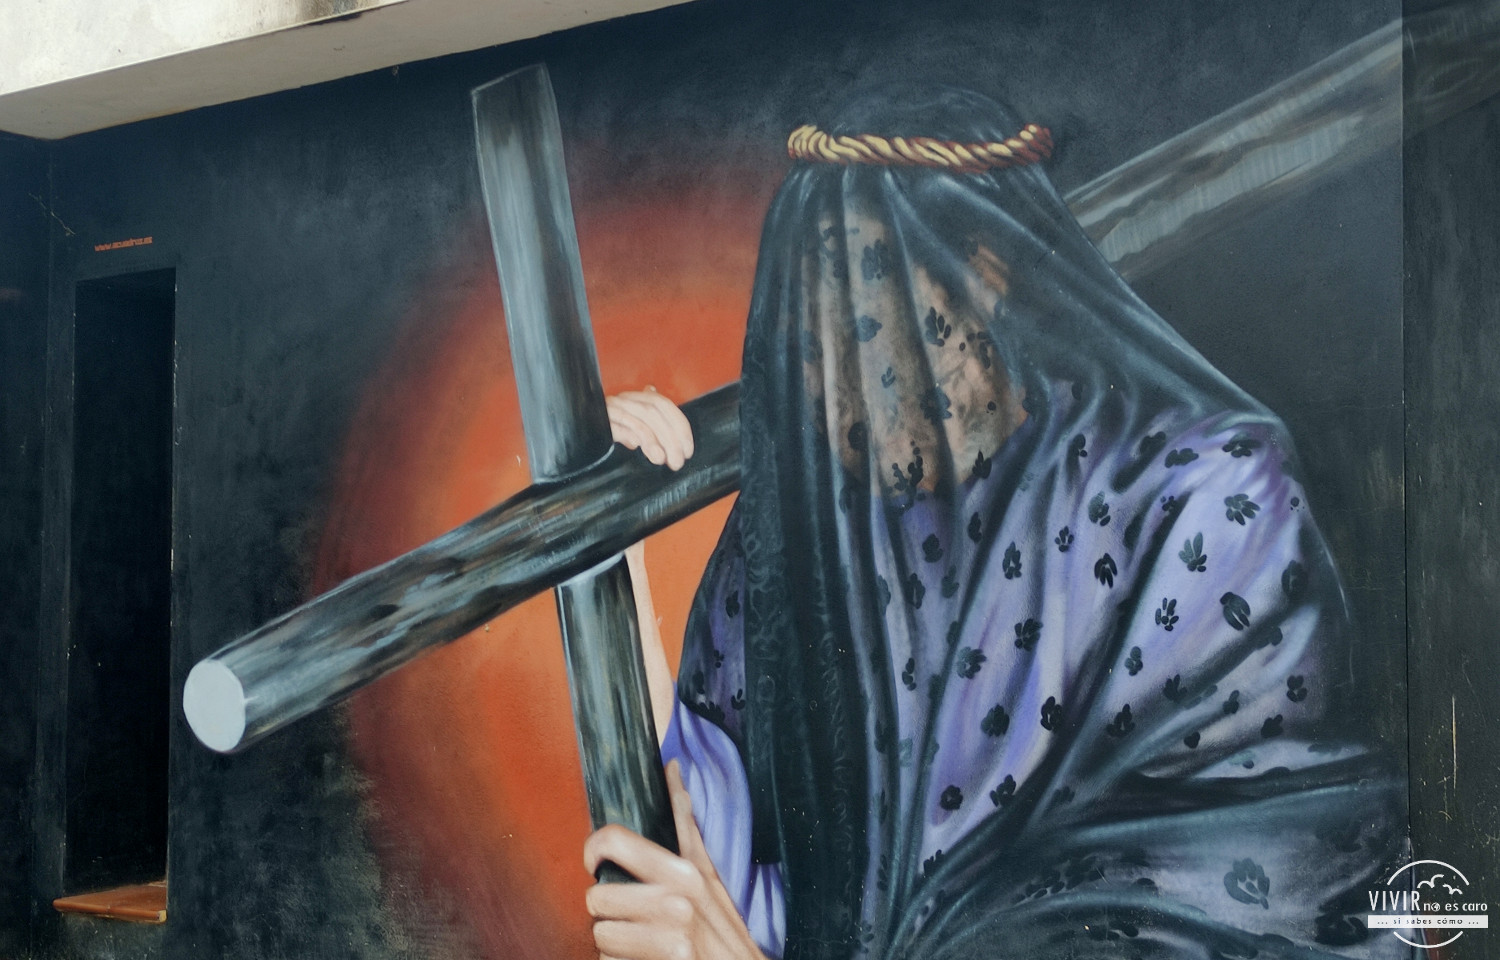 Pintura mural Semana Santa en fachada de Valverde de la Vera